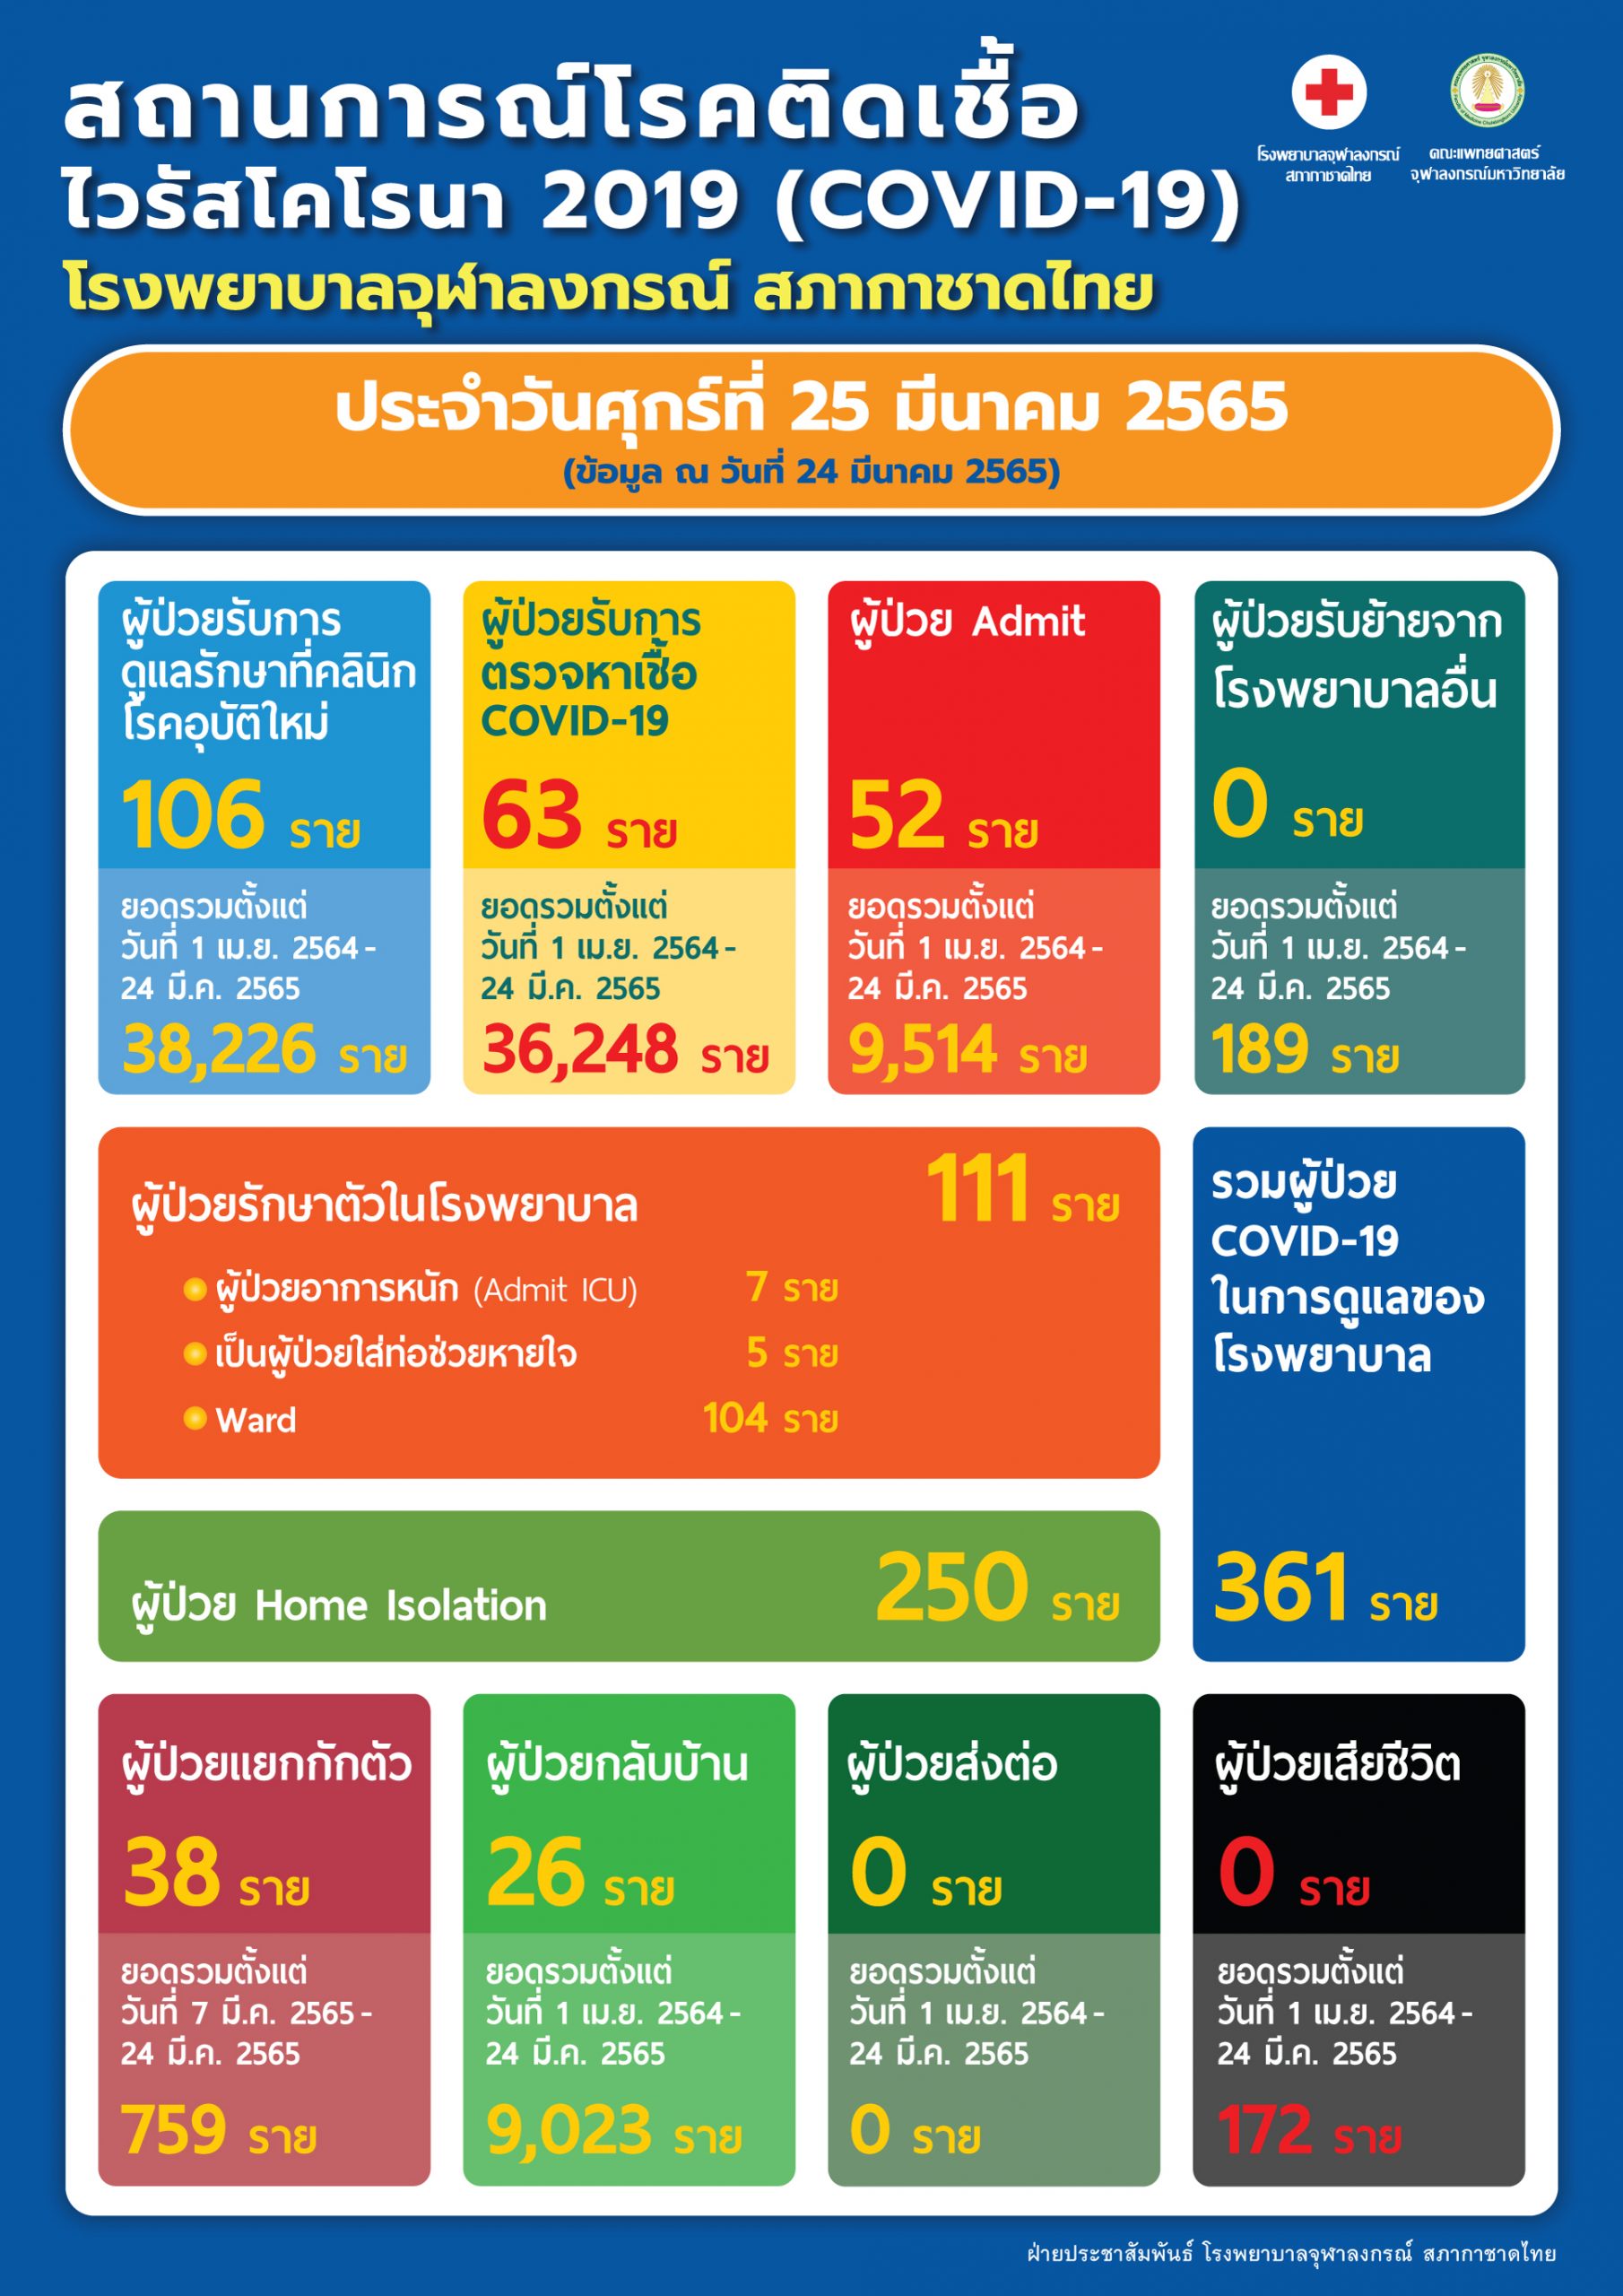 สถานการณ์โรคติดเชื้อไวรัสโคโรนา 2019 (COVID-19) โรงพยาบาลจุฬาลงกรณ์ สภากาชาดไทย ประจำวันศุกร์ที่ 25 มีนาคม 2565